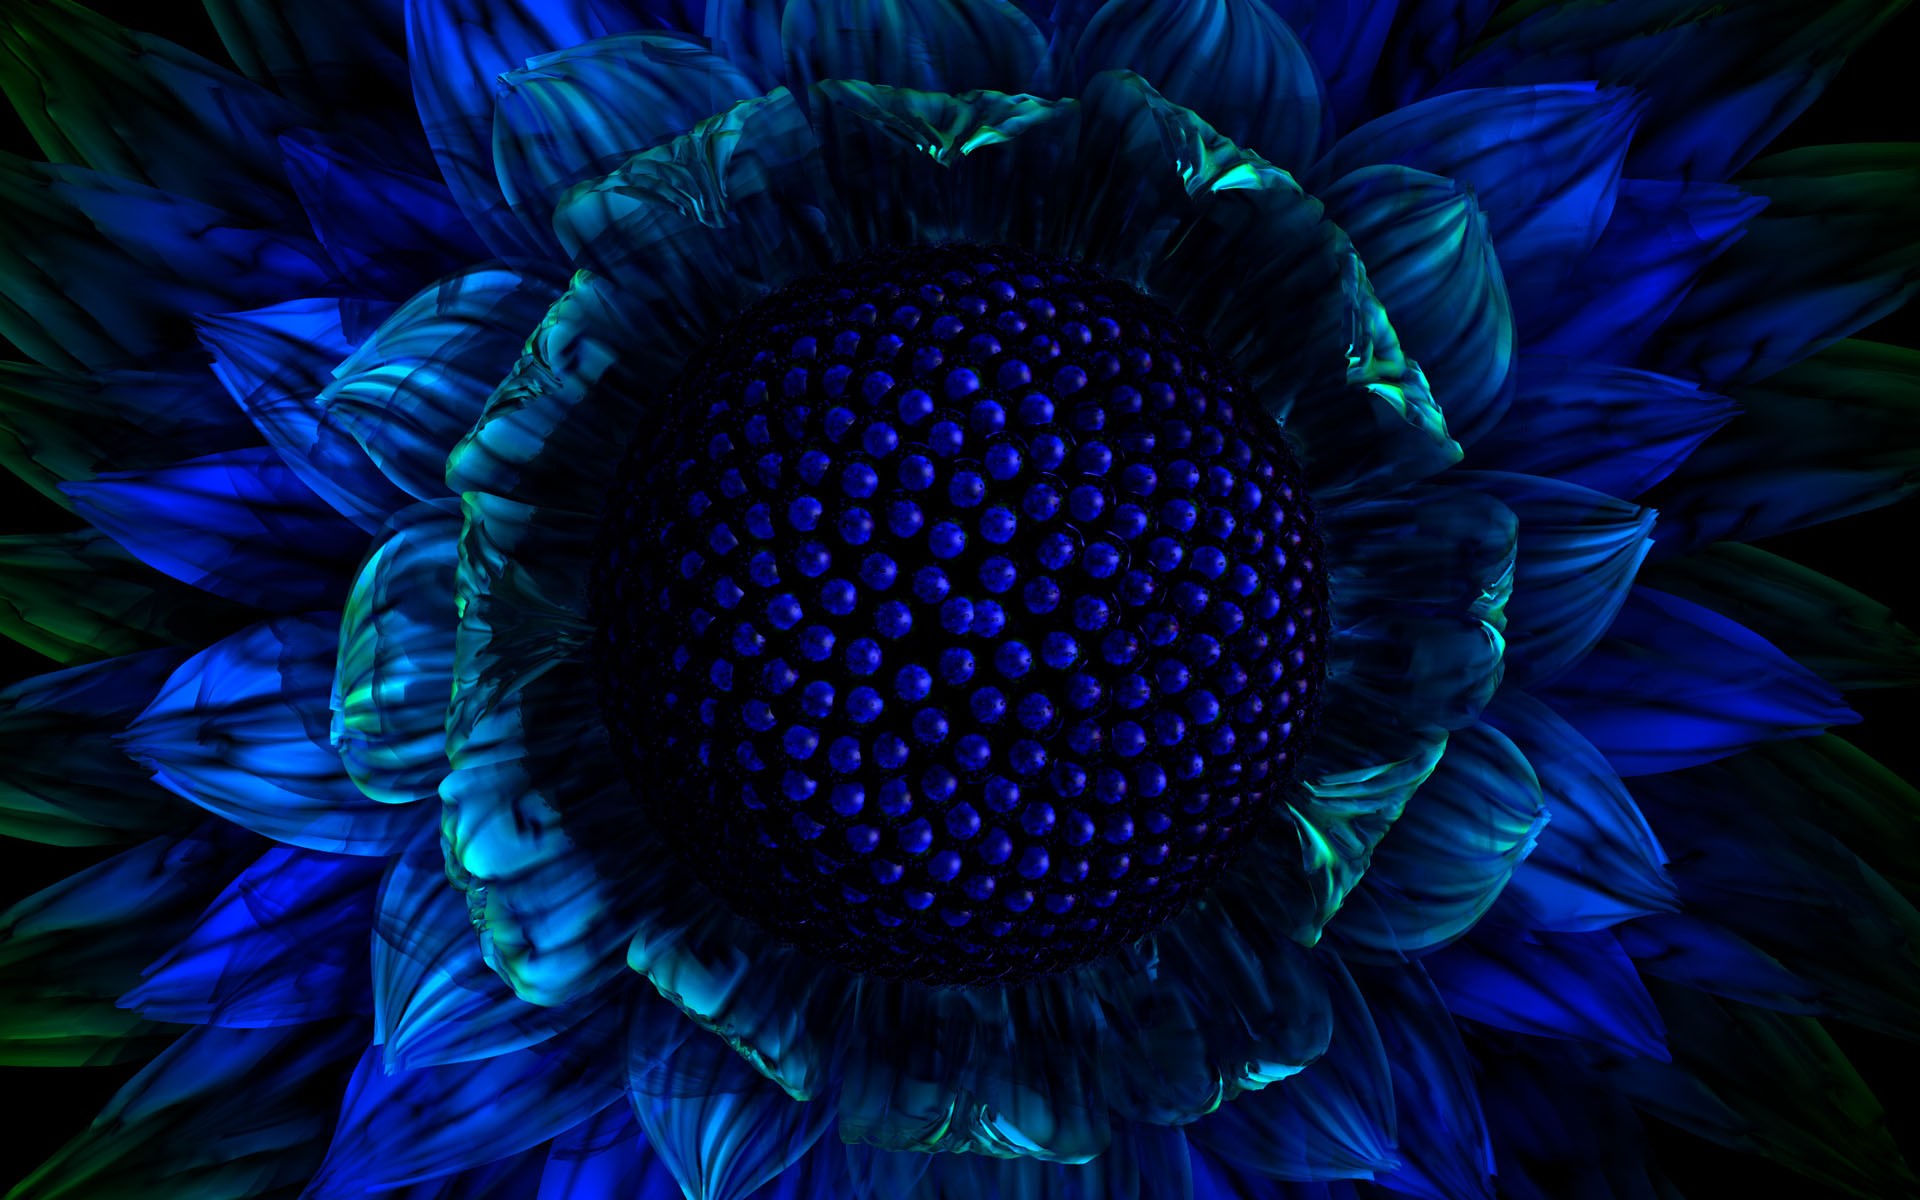 Blue Sunflower Wallpapers